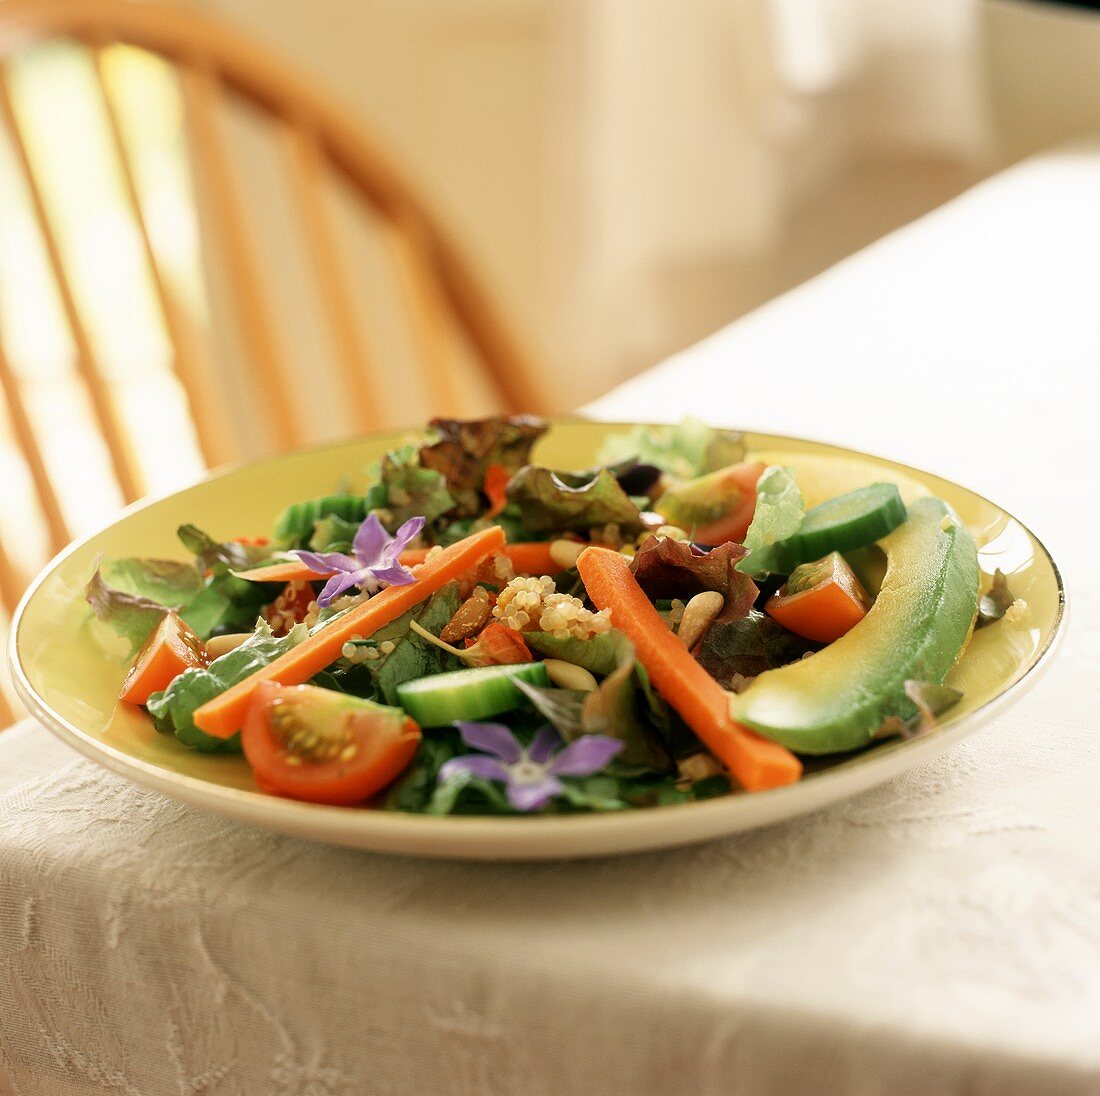 Blattsalat mit Gemüse, Borretschblüten und Pinienkernen